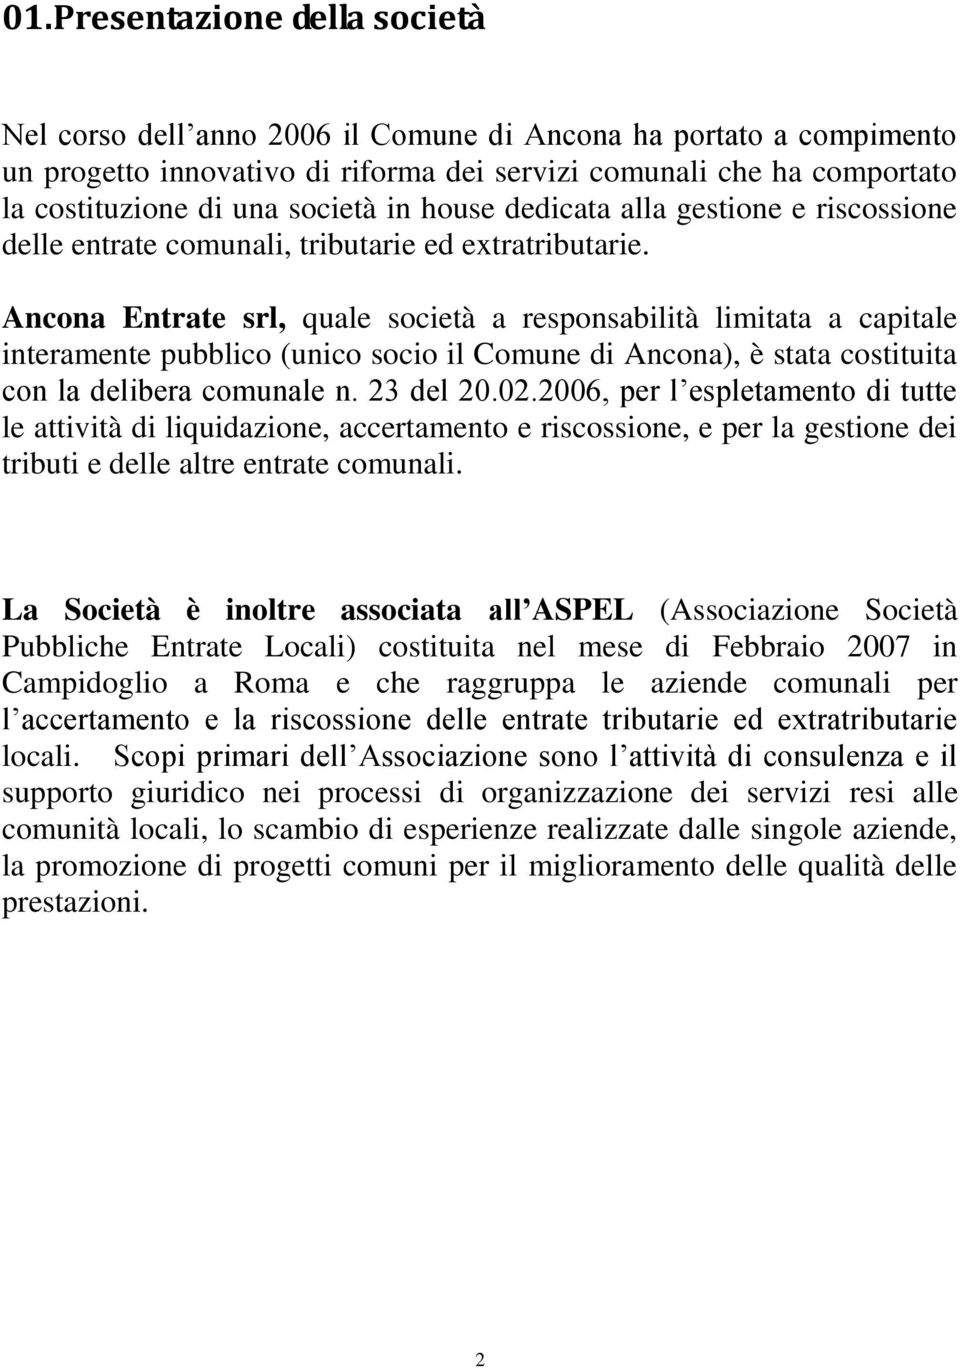 Ancona Entrate srl, quale società a responsabilità limitata a capitale interamente pubblico (unico socio il Comune di Ancona), è stata costituita con la delibera comunale n. 23 del 20.02.